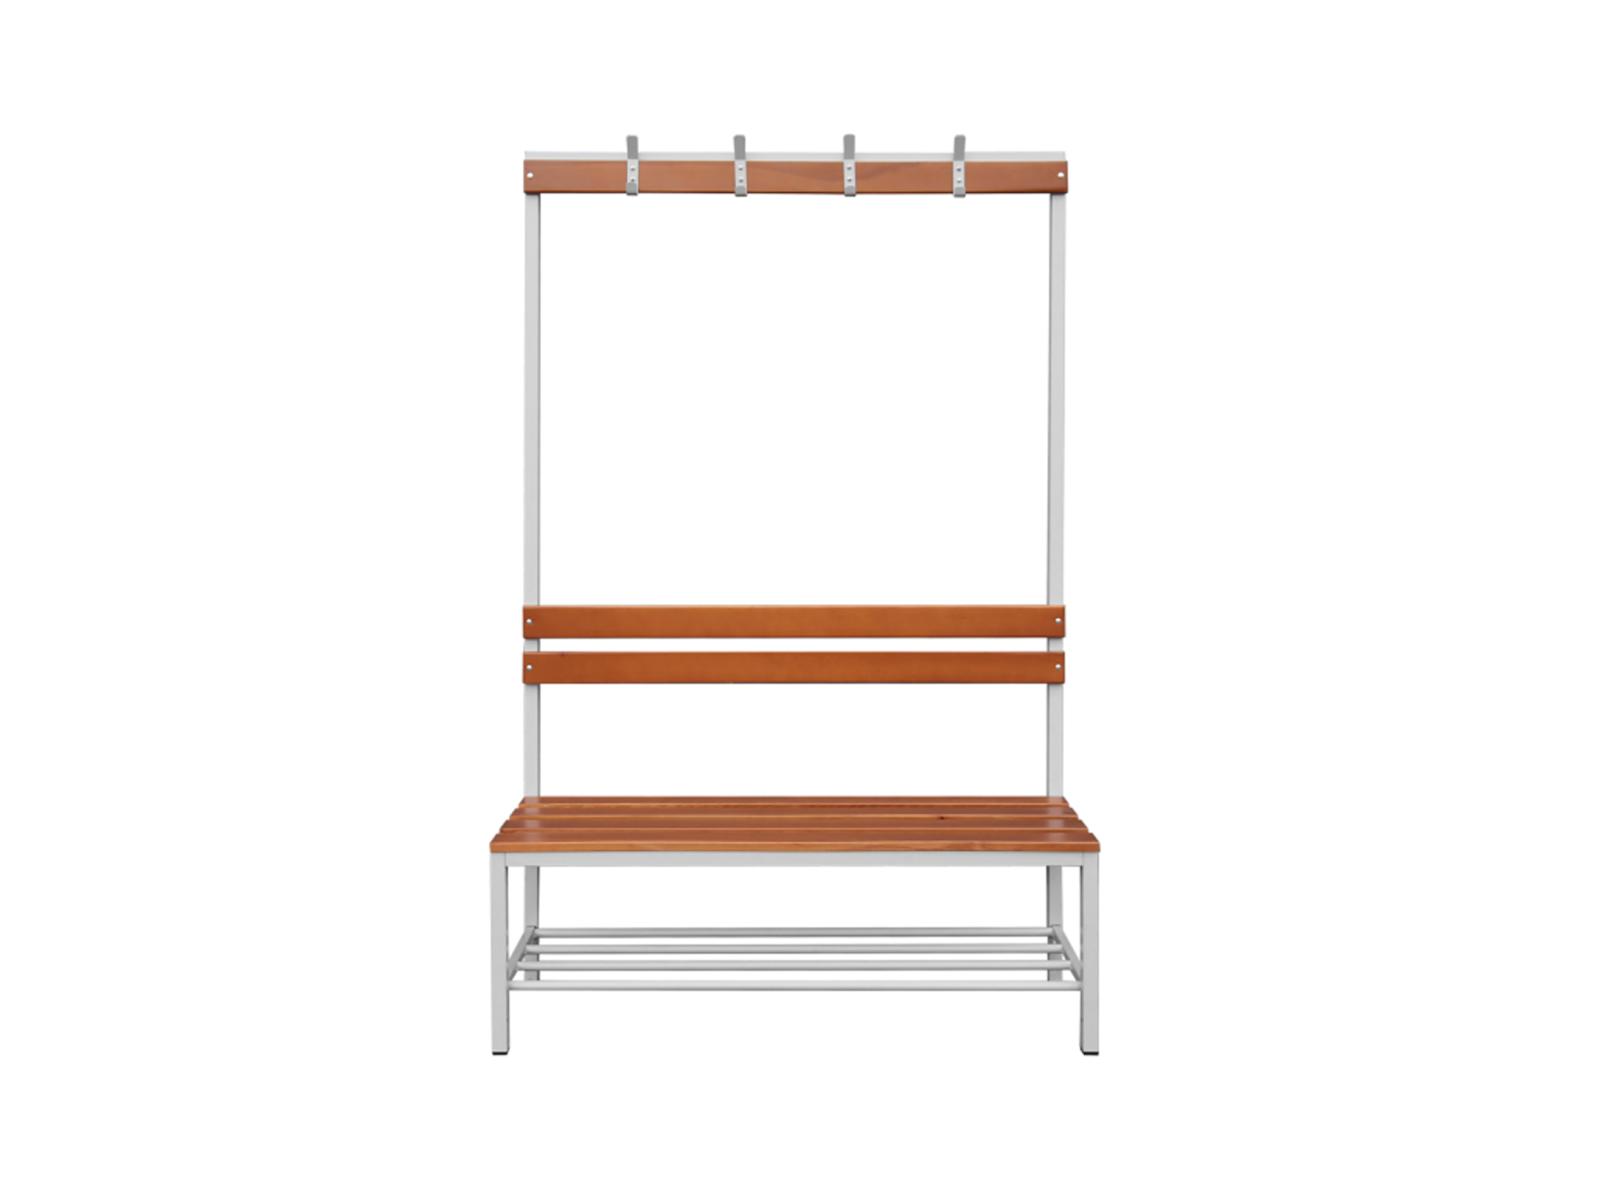 Sitzbank Ideal einseitig - 1200mm breit